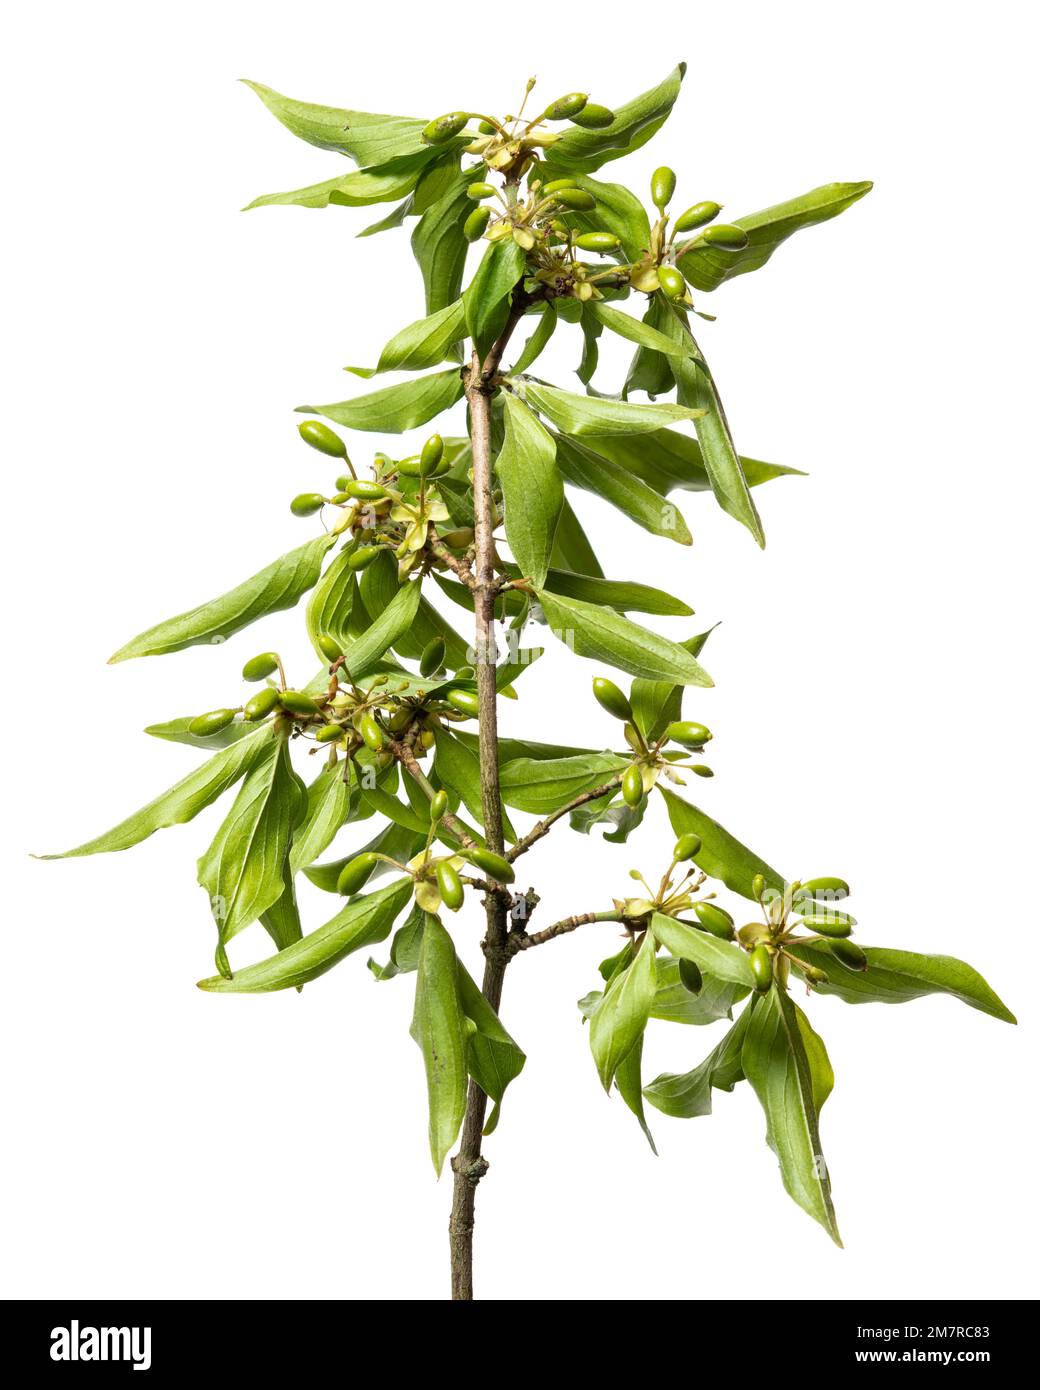 Maiskirsche (Cornus Mas), Sträucher, holzige Pflanze, isoliert, weißer Hintergrund Stockfoto